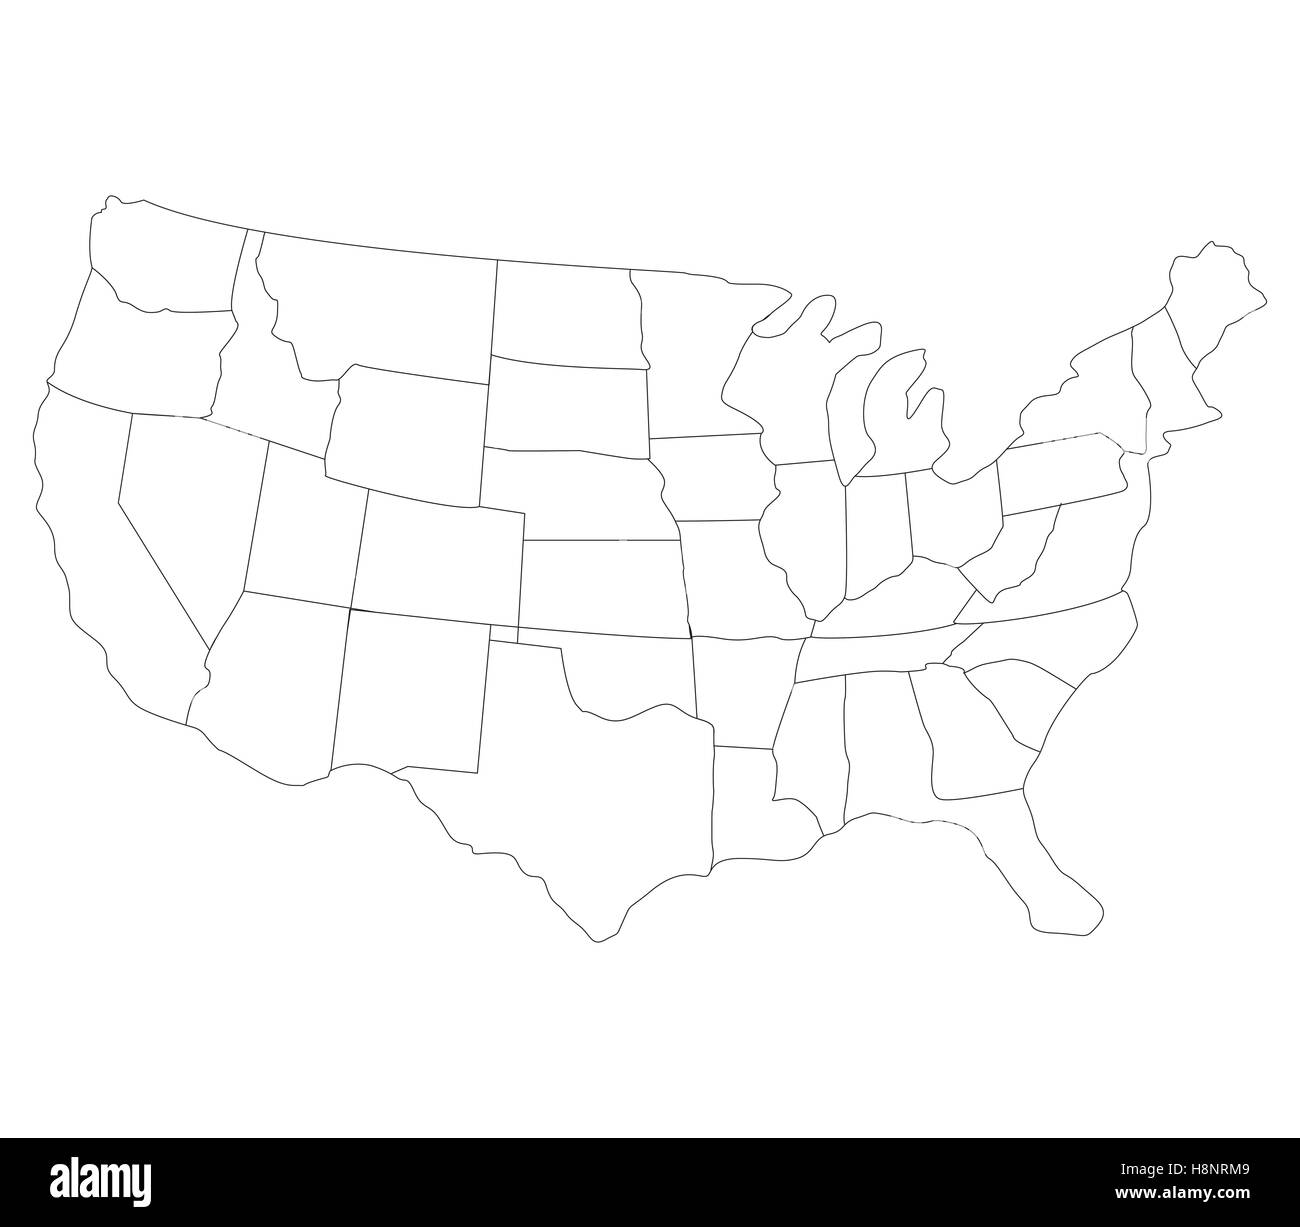 Mapa De Los Estados Unidos Con Las Regiones Fotografía De Stock Alamy